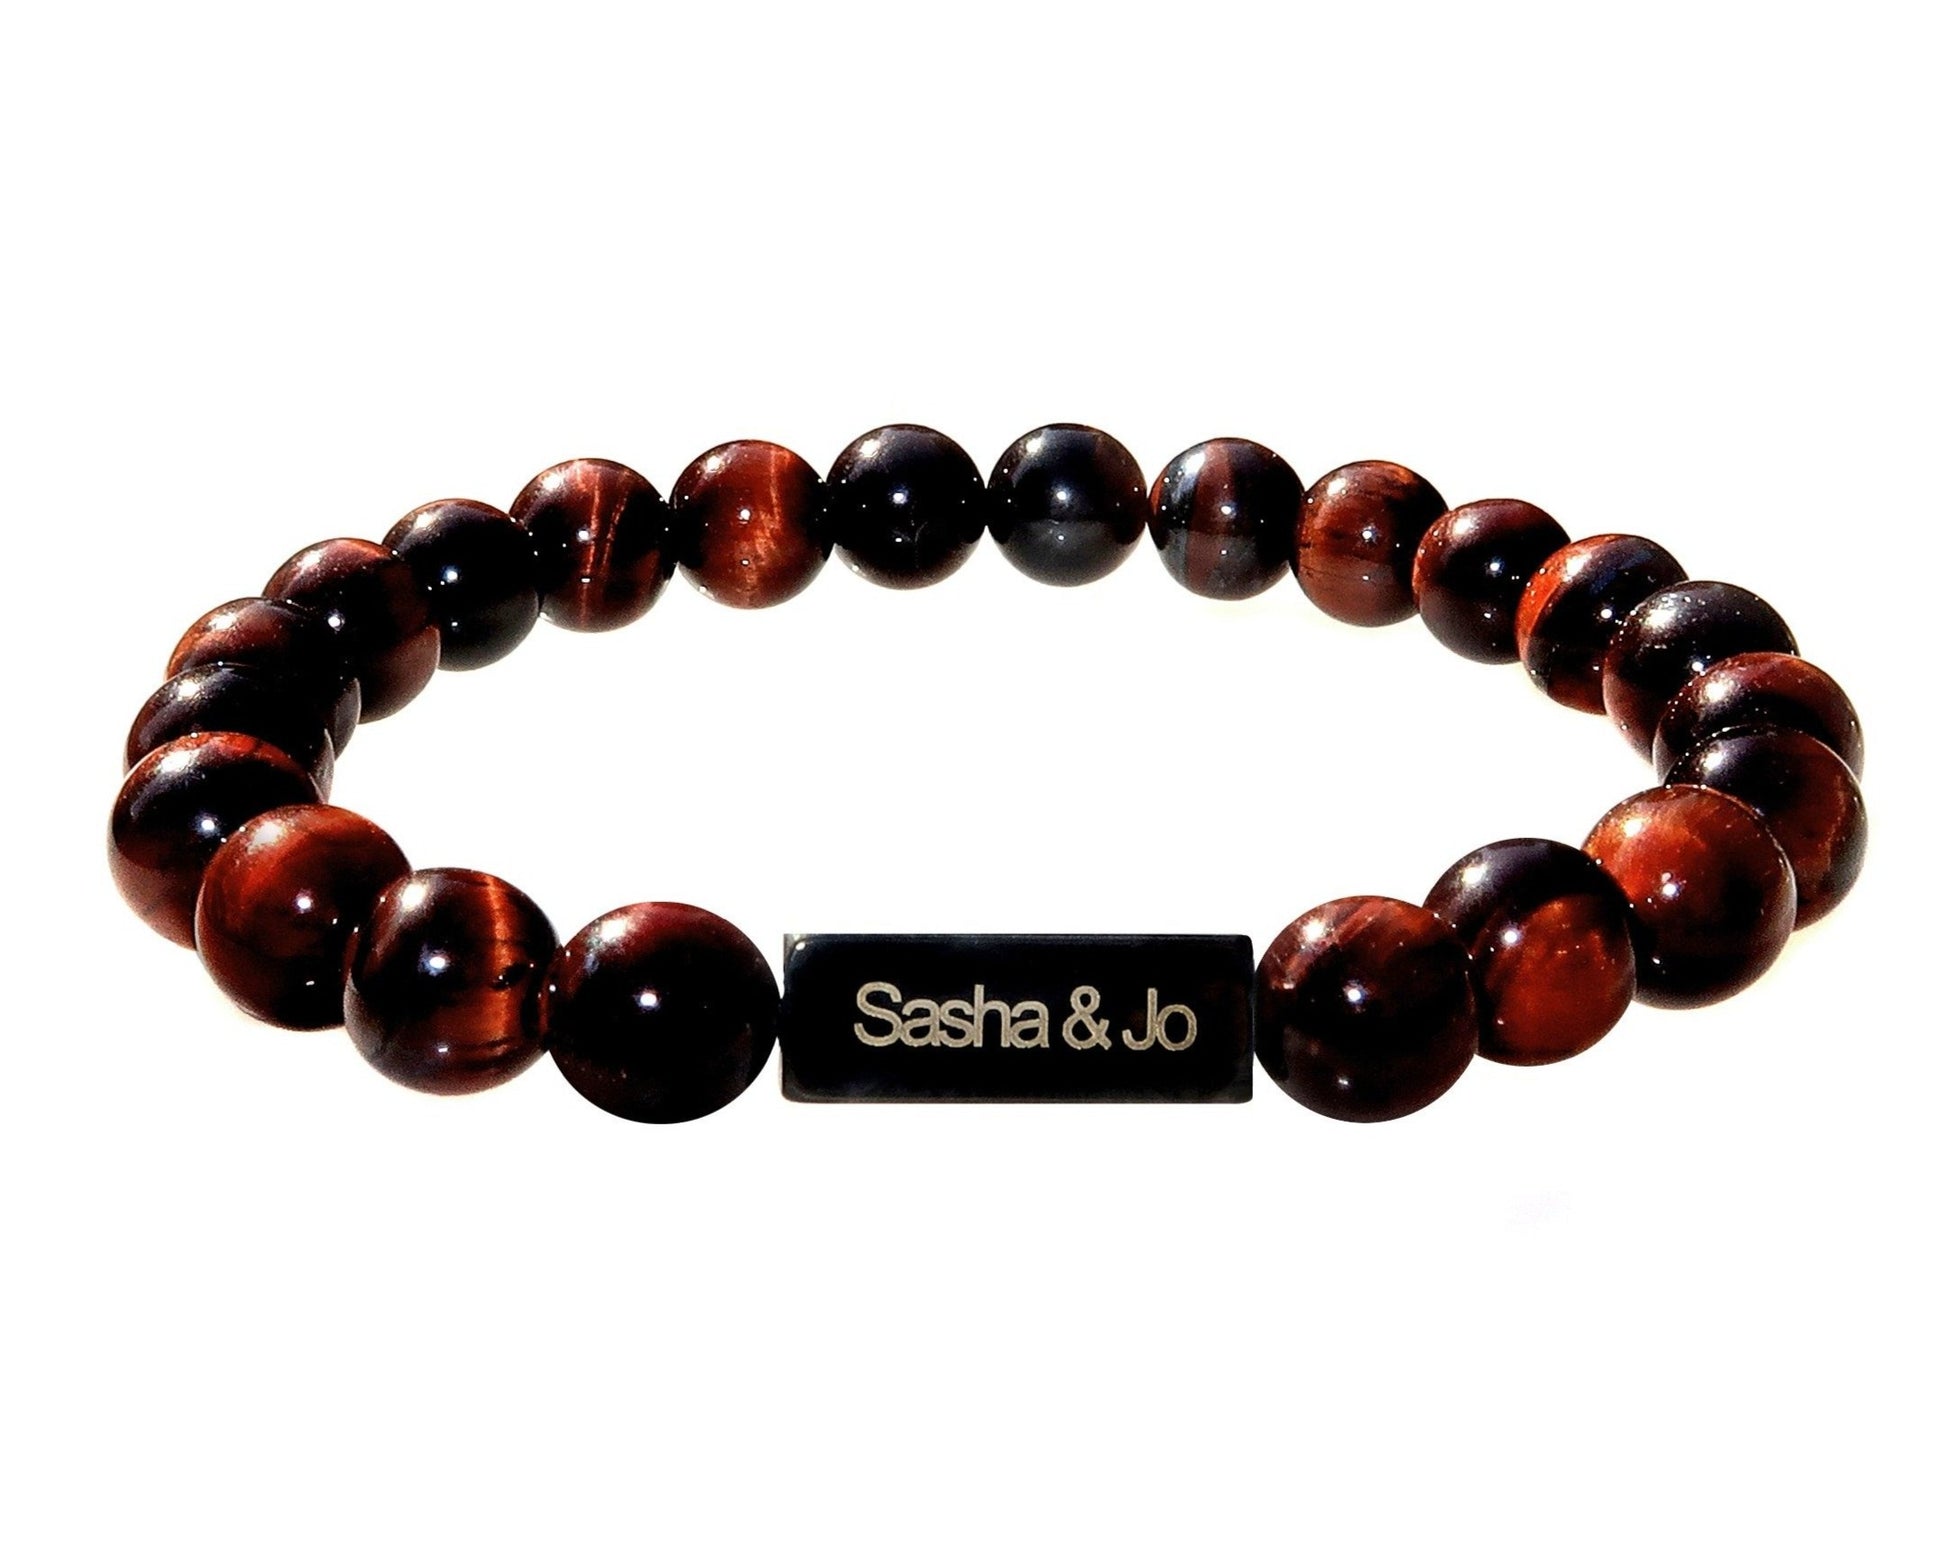 Sasha & Jo brown tiger eye beads bracelet